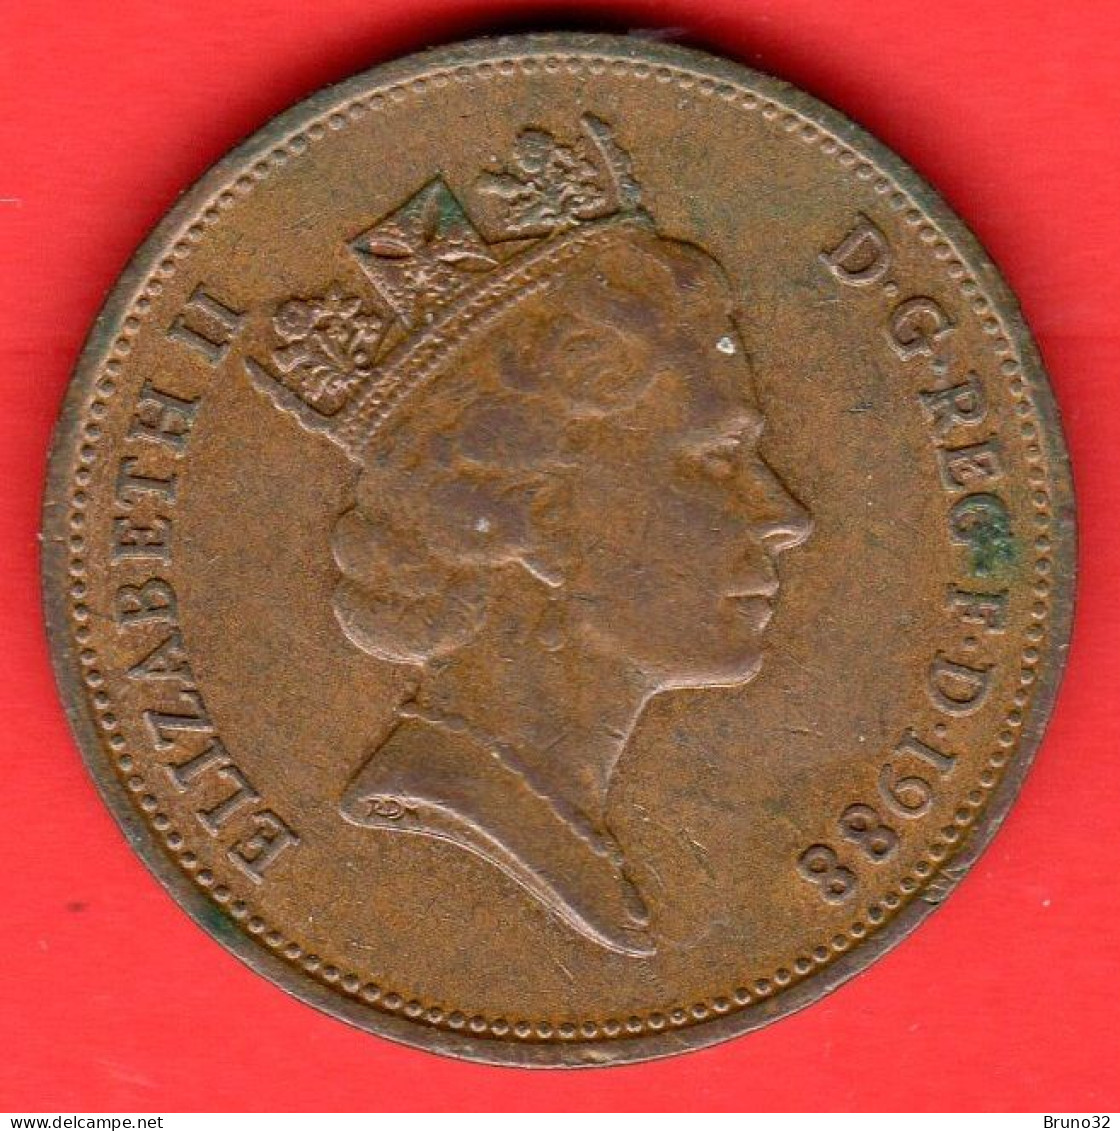 Gran Bretagna - Great Britain - GB - 2 Pence - 1988 - QFDC/aUNC - Come Da Foto - 2 Pence & 2 New Pence